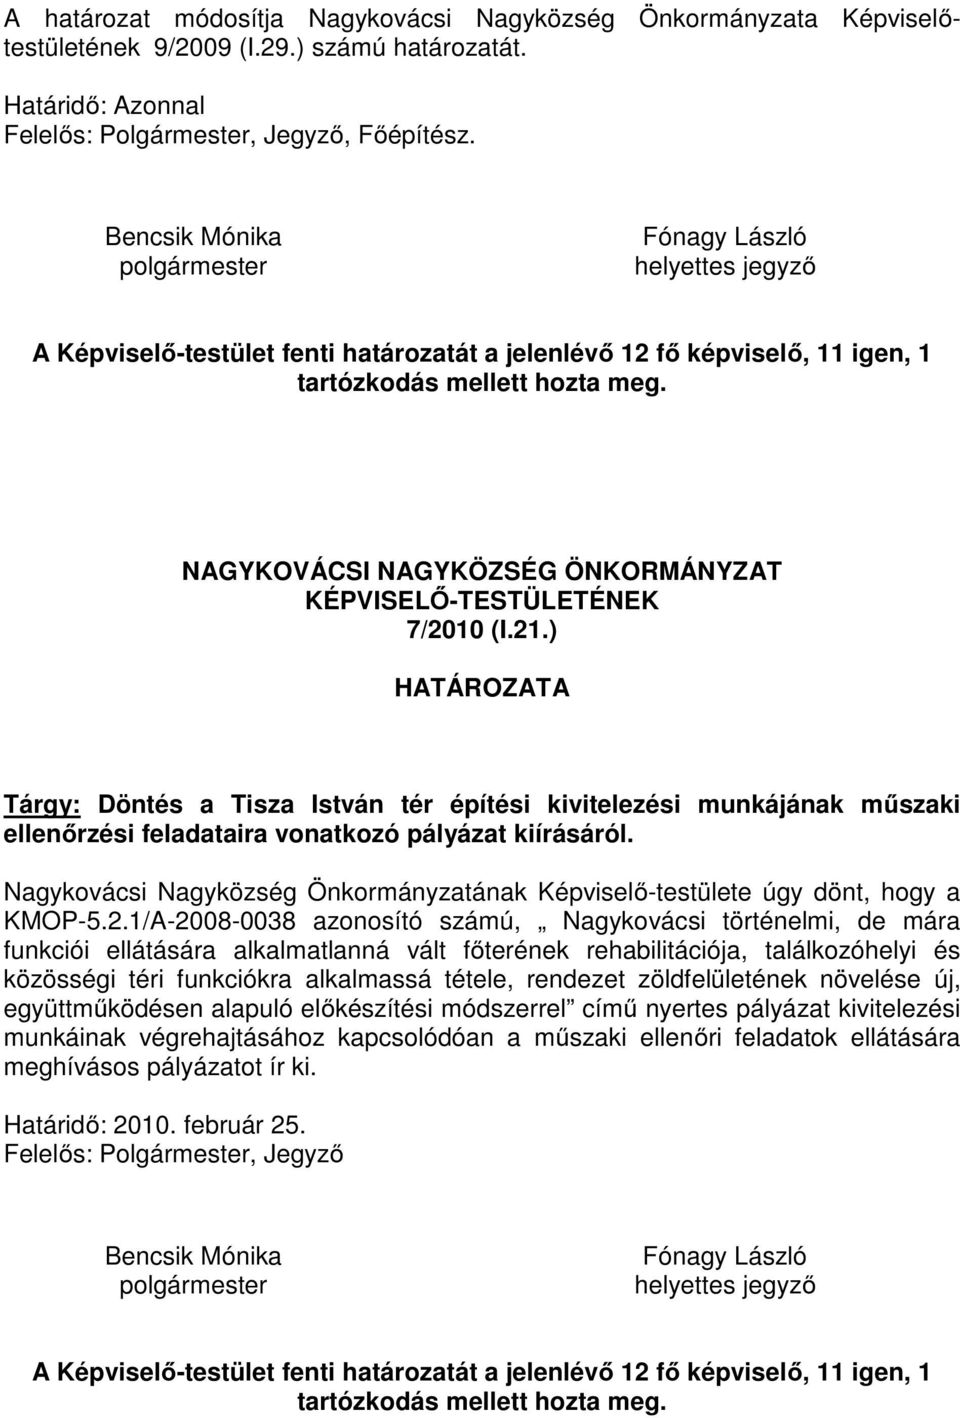 ) Tárgy: Döntés a Tisza István tér építési kivitelezési munkájának műszaki ellenőrzési feladataira vonatkozó pályázat kiírásáról. KMOP-5.2.